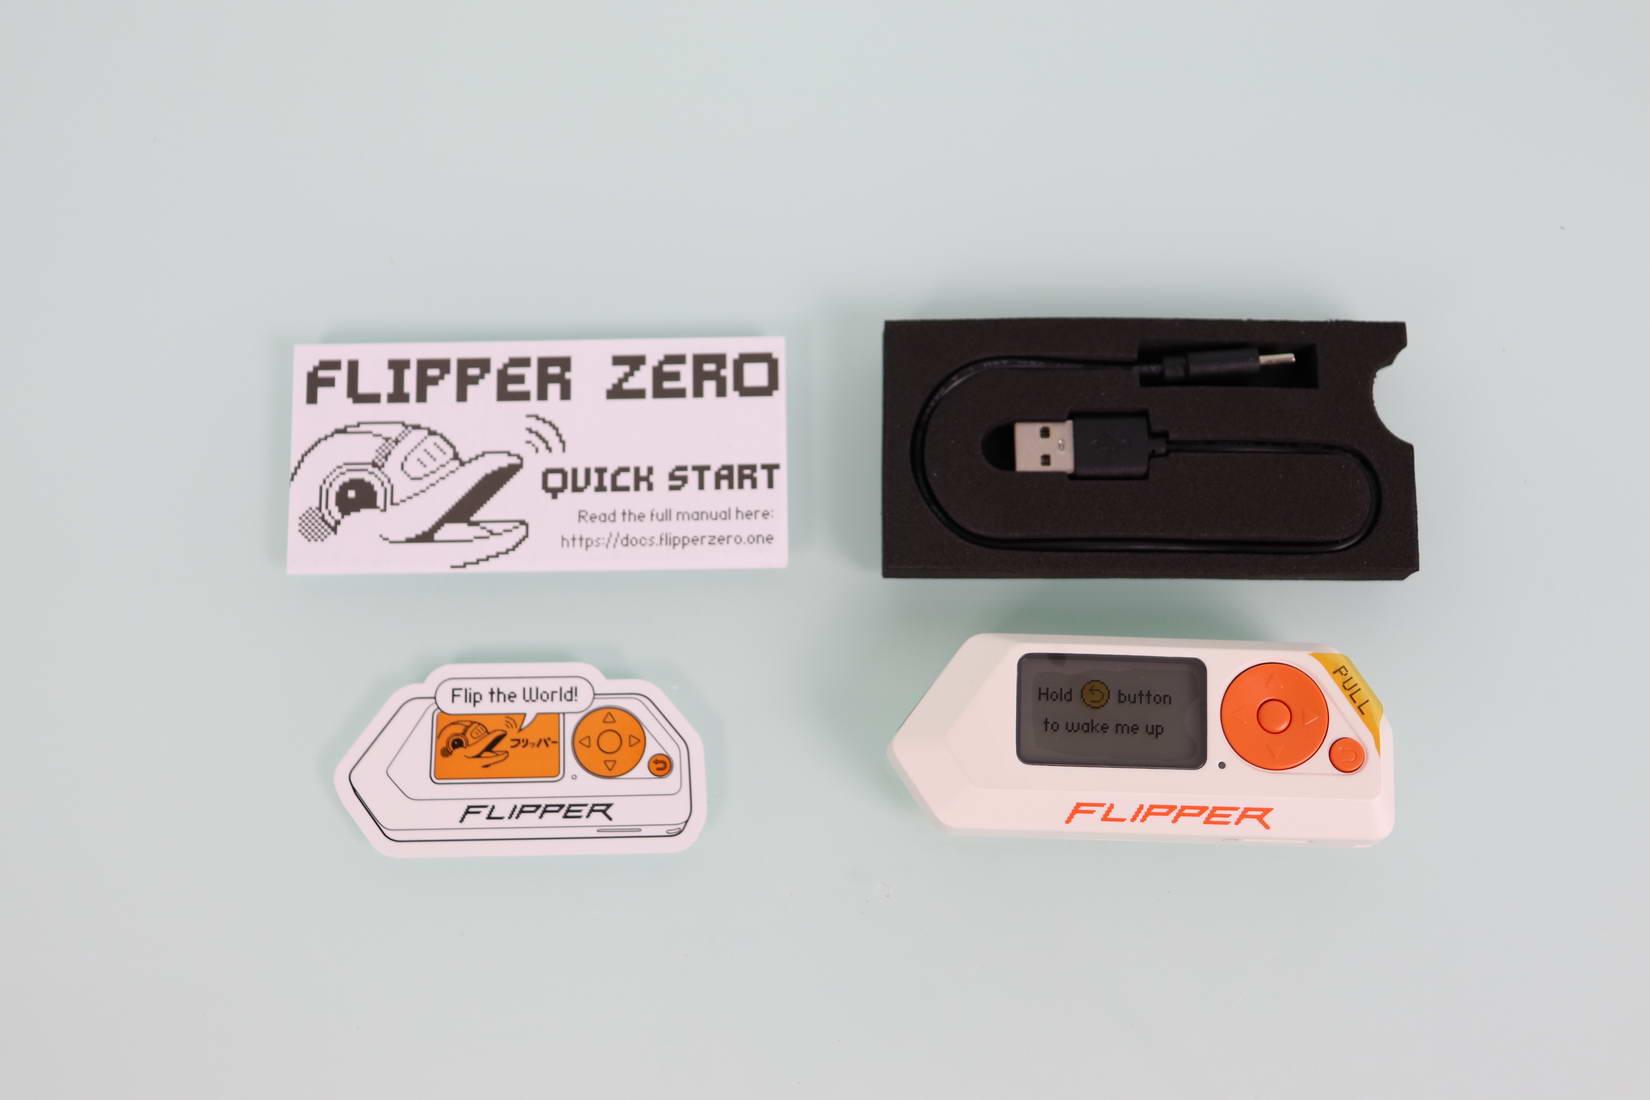 Contenido de la caja del Flipper Zero en detalle con la documentación y accesorios